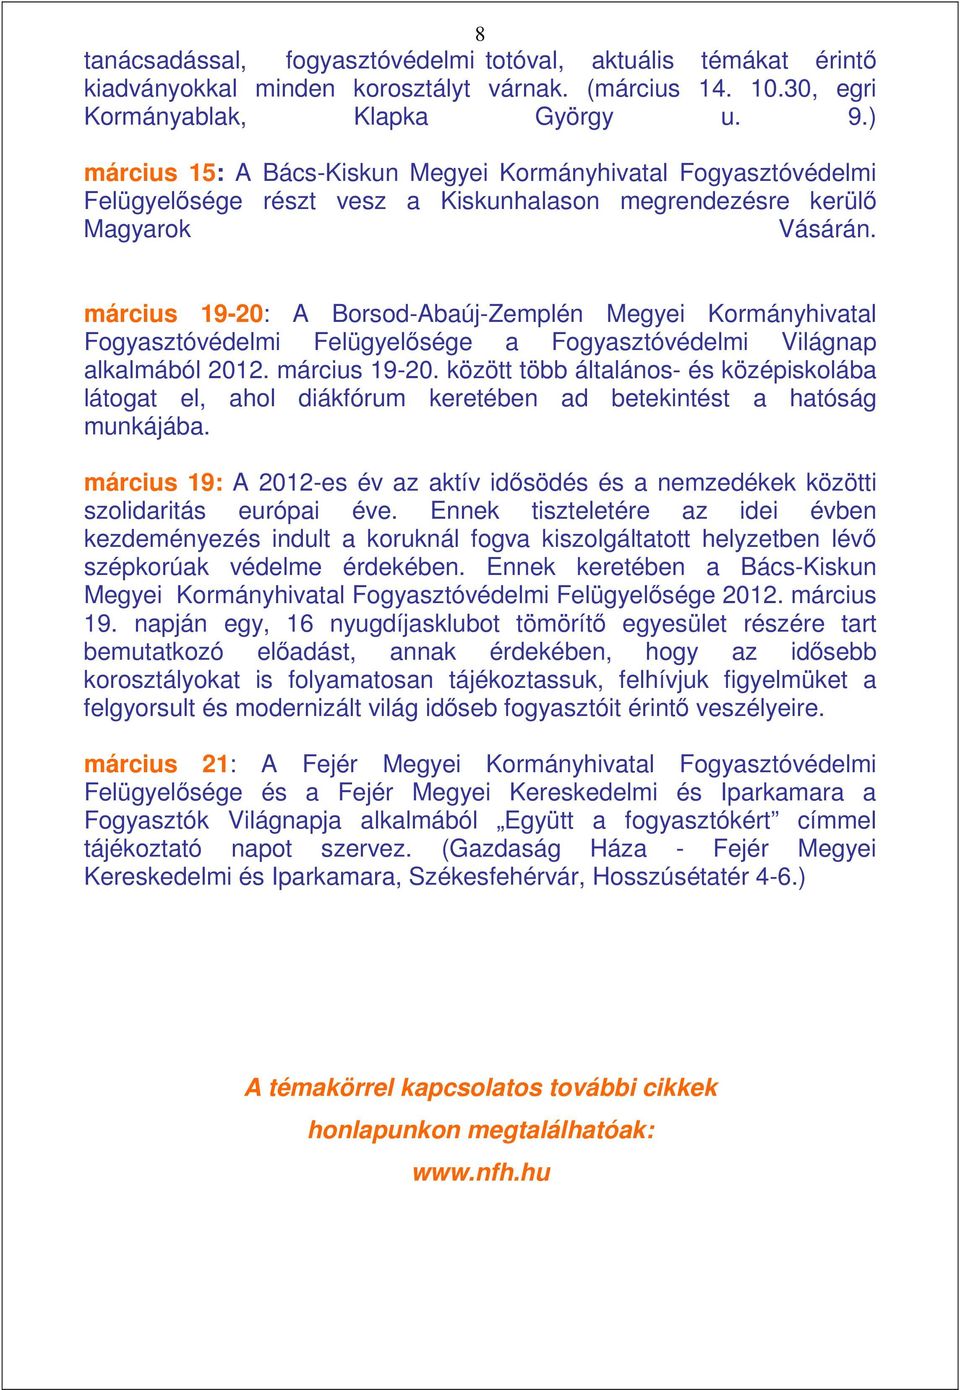 március 19-20: A Borsod-Abaúj-Zemplén Megyei Kormányhivatal Fogyasztóvédelmi Felügyelısége a Fogyasztóvédelmi Világnap alkalmából 2012. március 19-20.